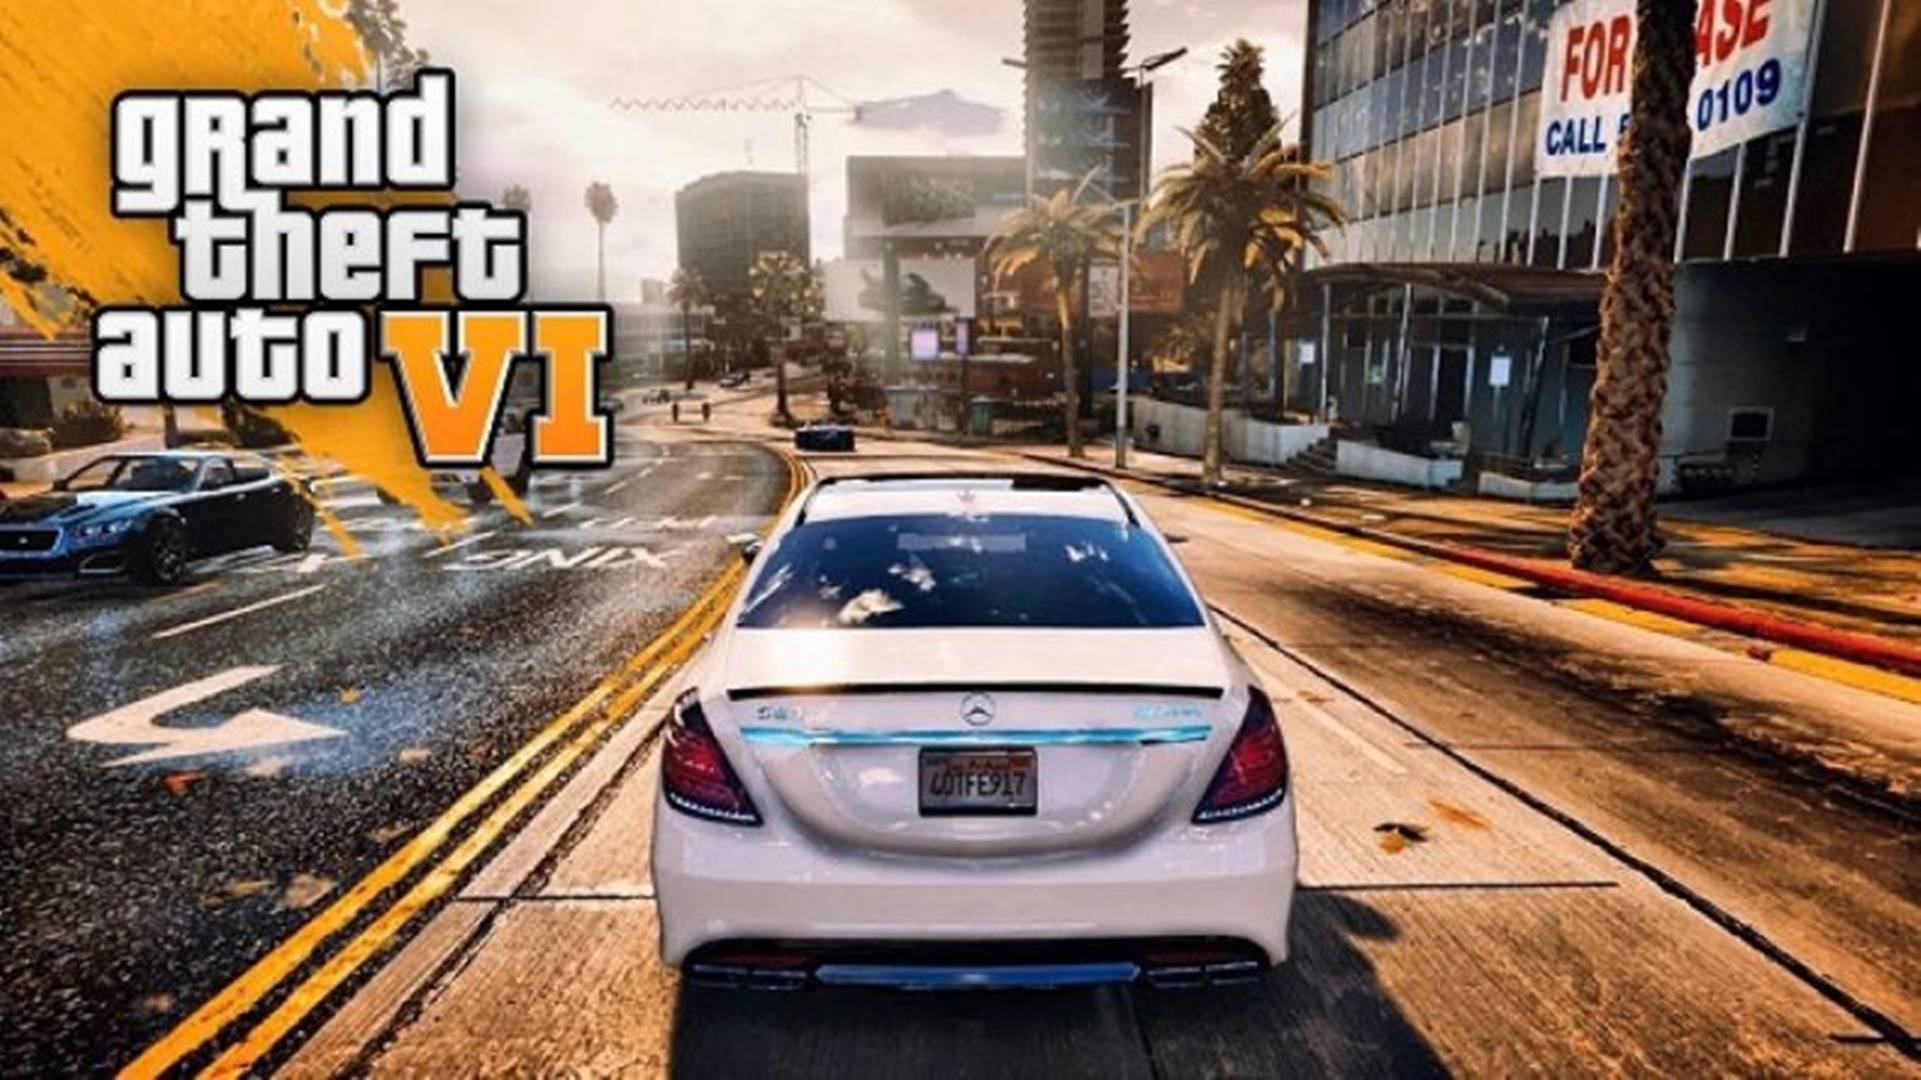 Grand Theft Auto 6 é um dos jogos mais aguardados de sempre, no entanto a Rockstar Games ainda não confirmou a sua existência. Os fãs da franquia estão sofrendo com a maior espera de um Grand Theft Auto de sempre, com mais de 6 anos desde do lançamento de GTA 5.